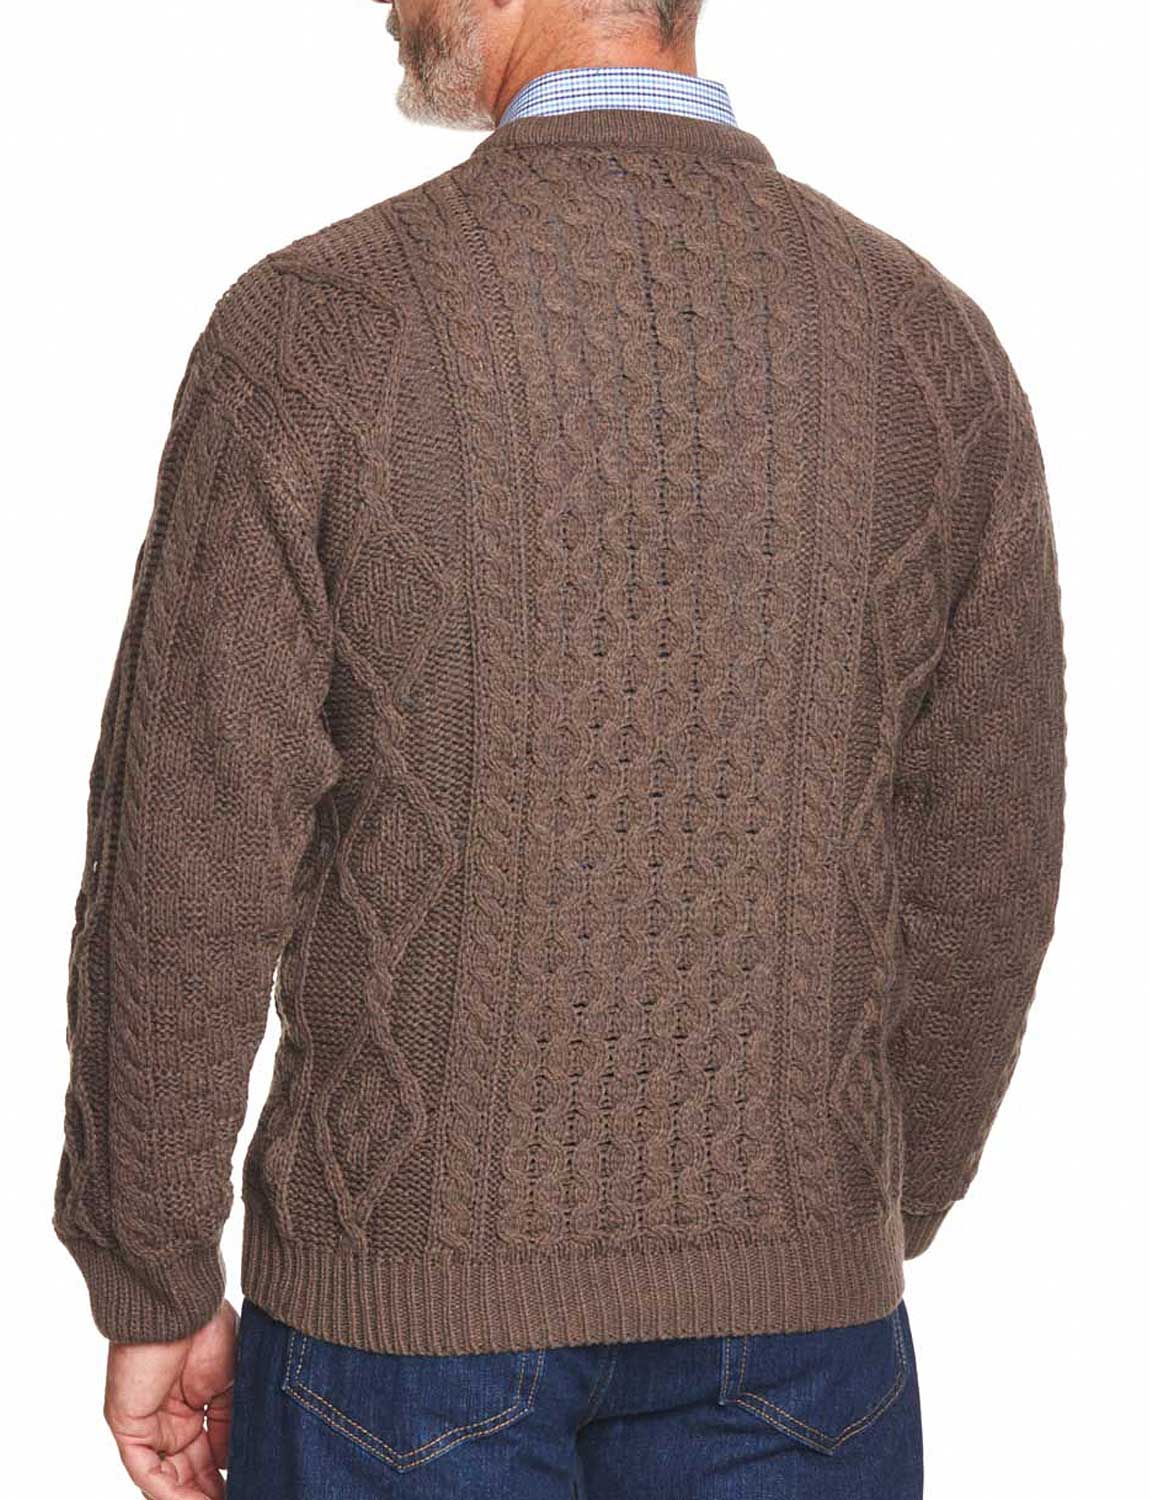 Mens Aran Jumper Cable Warm Sweater Top